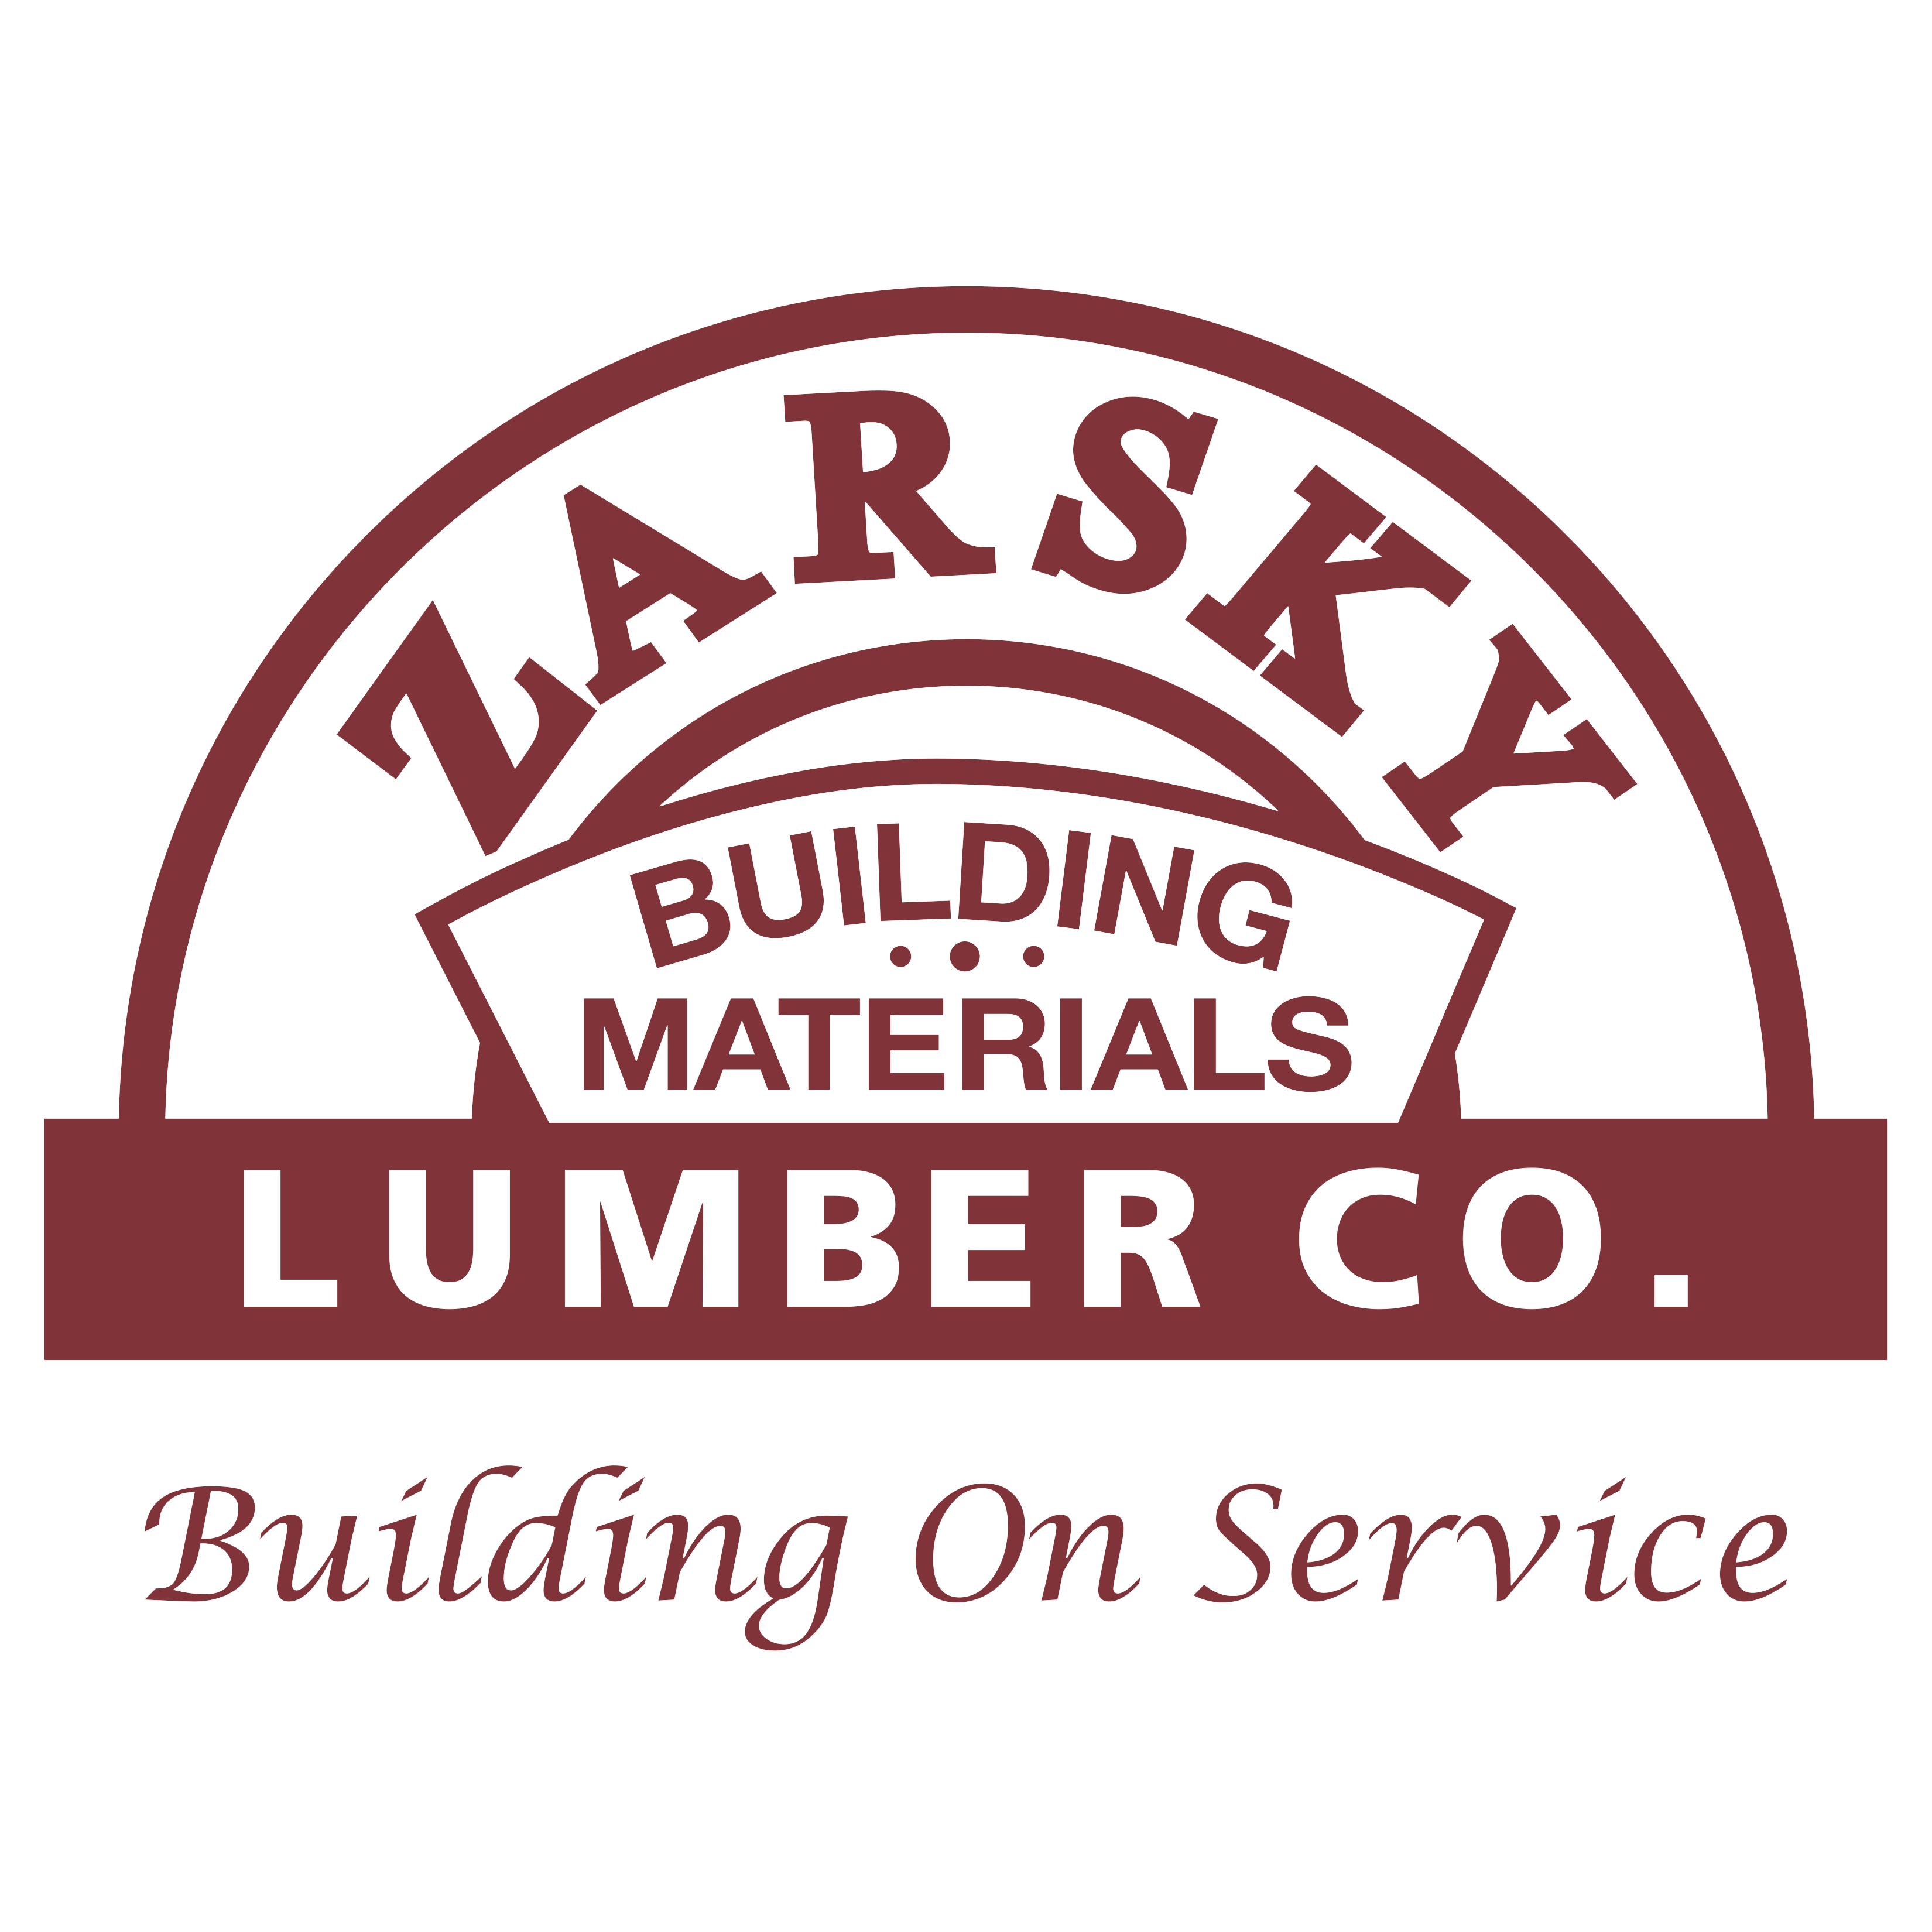 Zarsky Lumber Co. - Laredo, TX 78041 - (956)724-1863 | ShowMeLocal.com